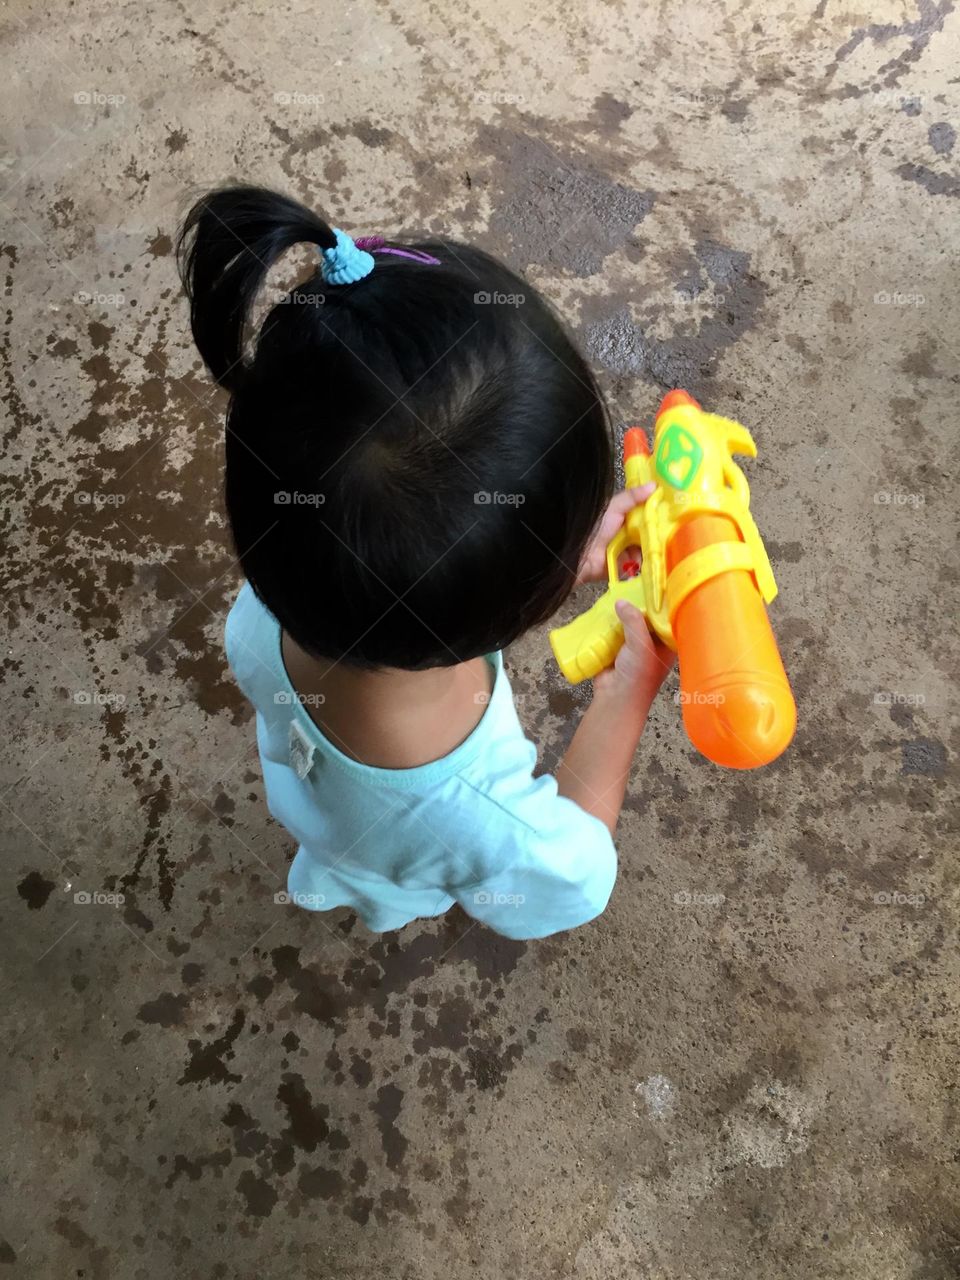 Toddler girl playing water gun 